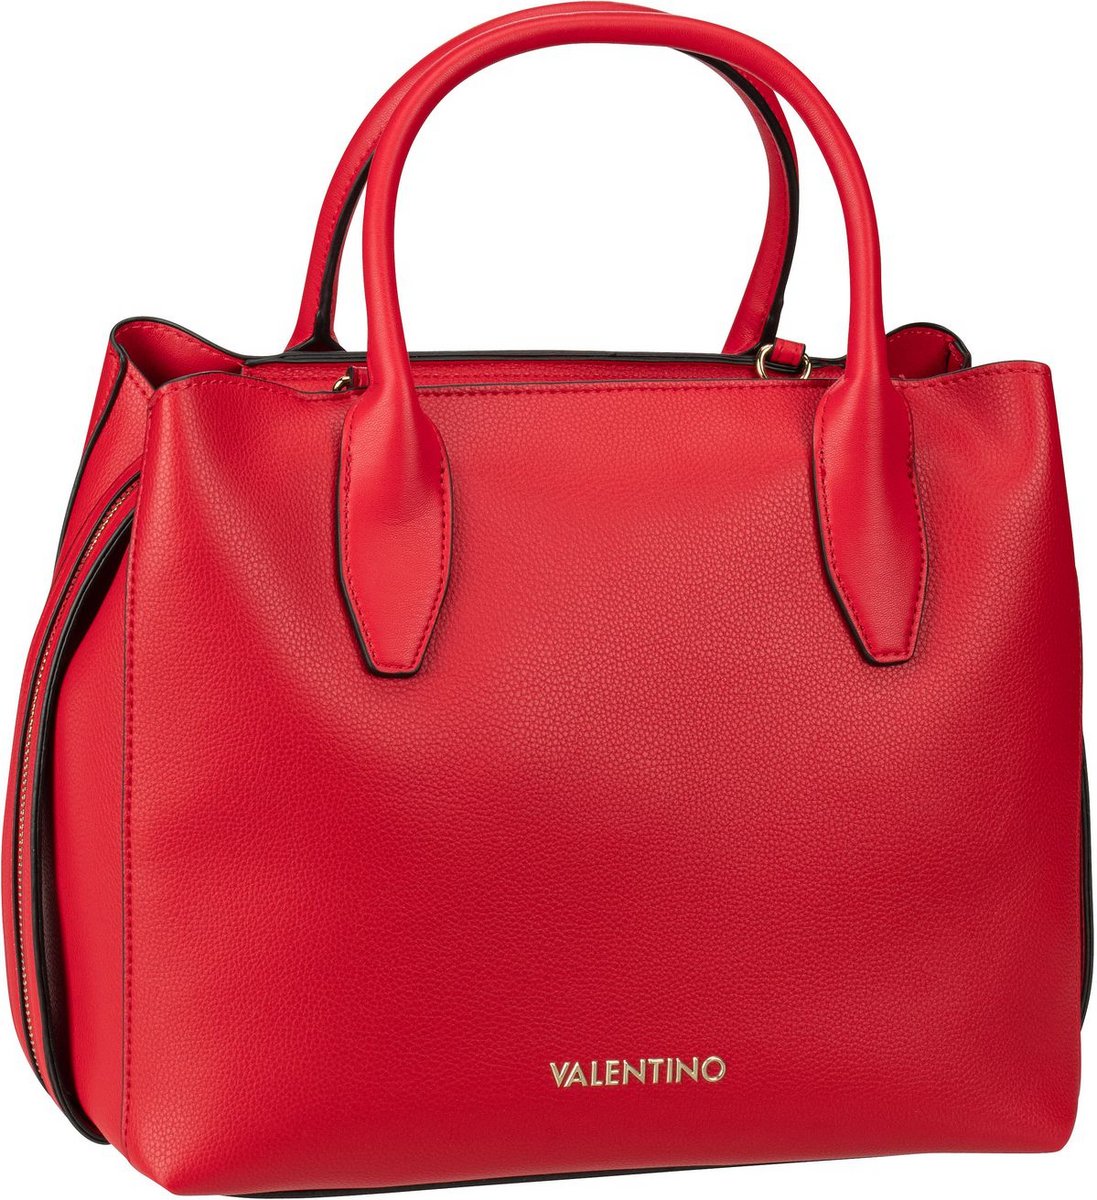 JOSEKO Damen Handtasche Shopper Handtasche Elegant Umhängetasche Designer Taschen Hobo Taschen Groß Damen Tasche Geeignet zum Einkaufen und zur Arbeit gehen 